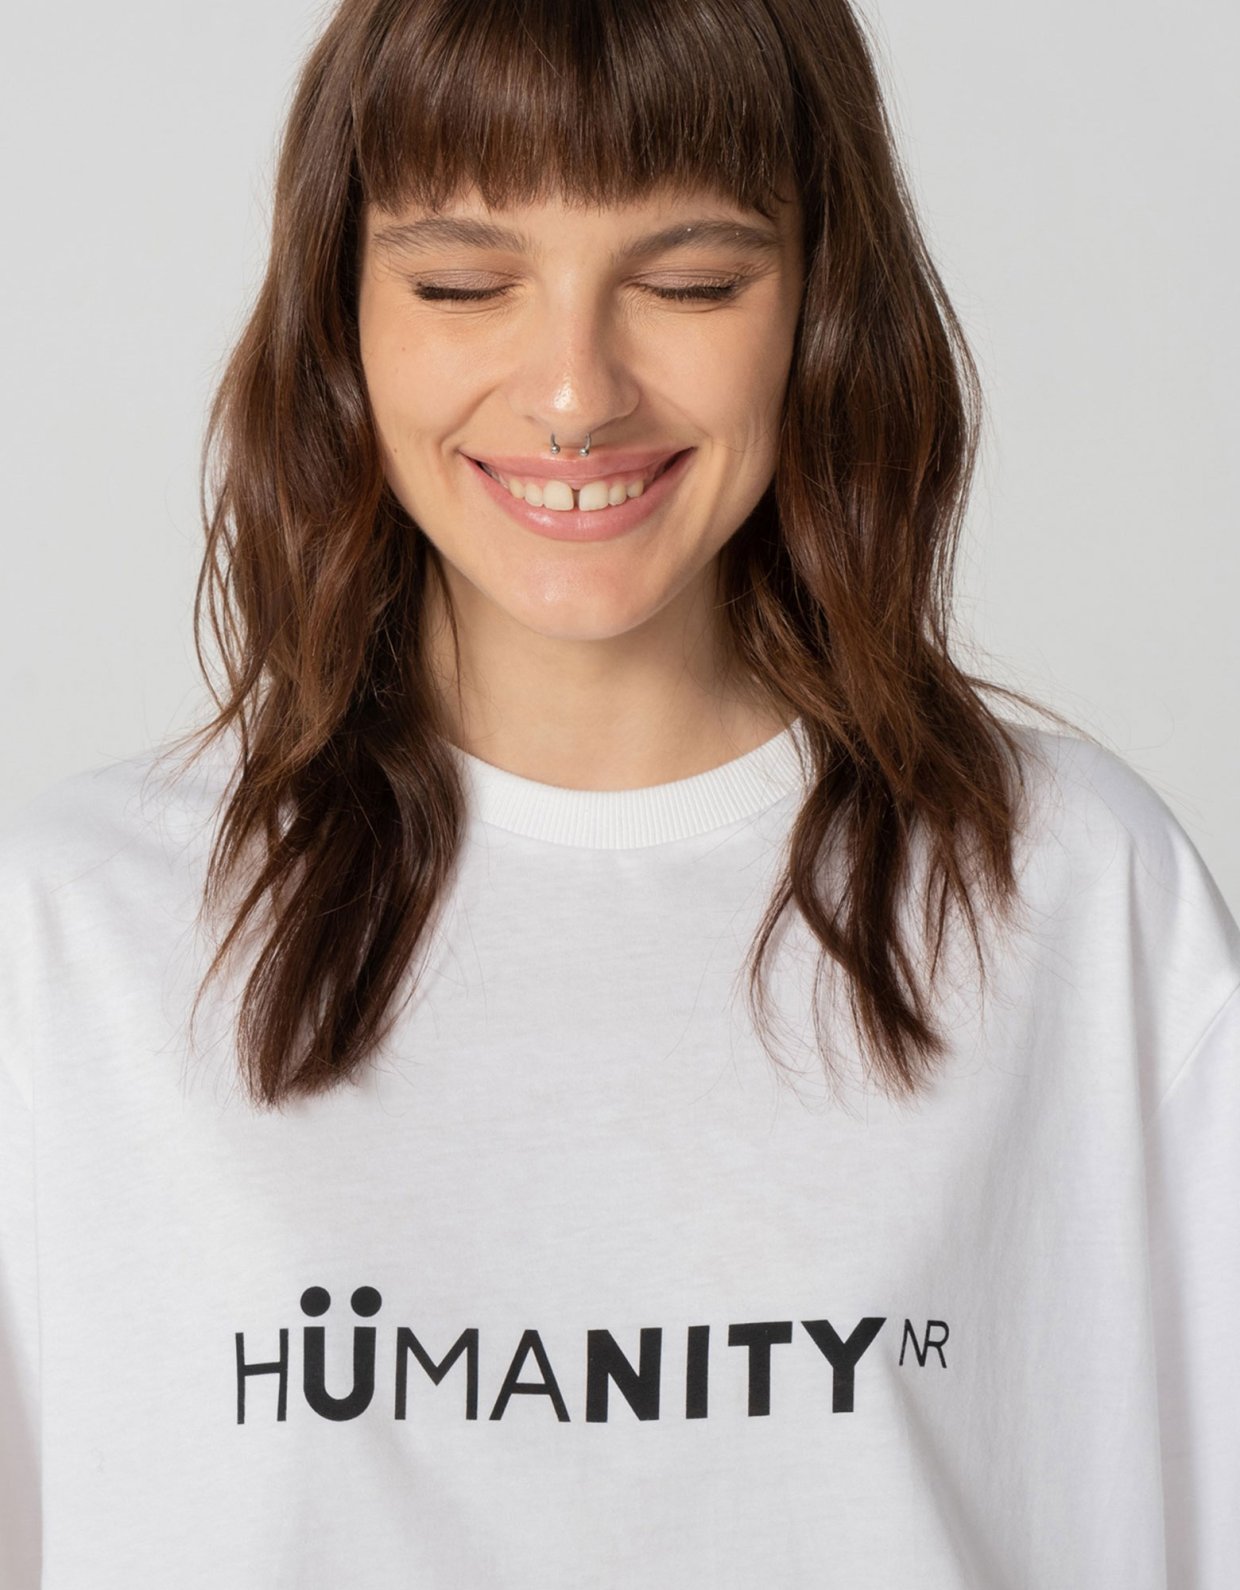 Nadia Rapti Humanity t-shirt white